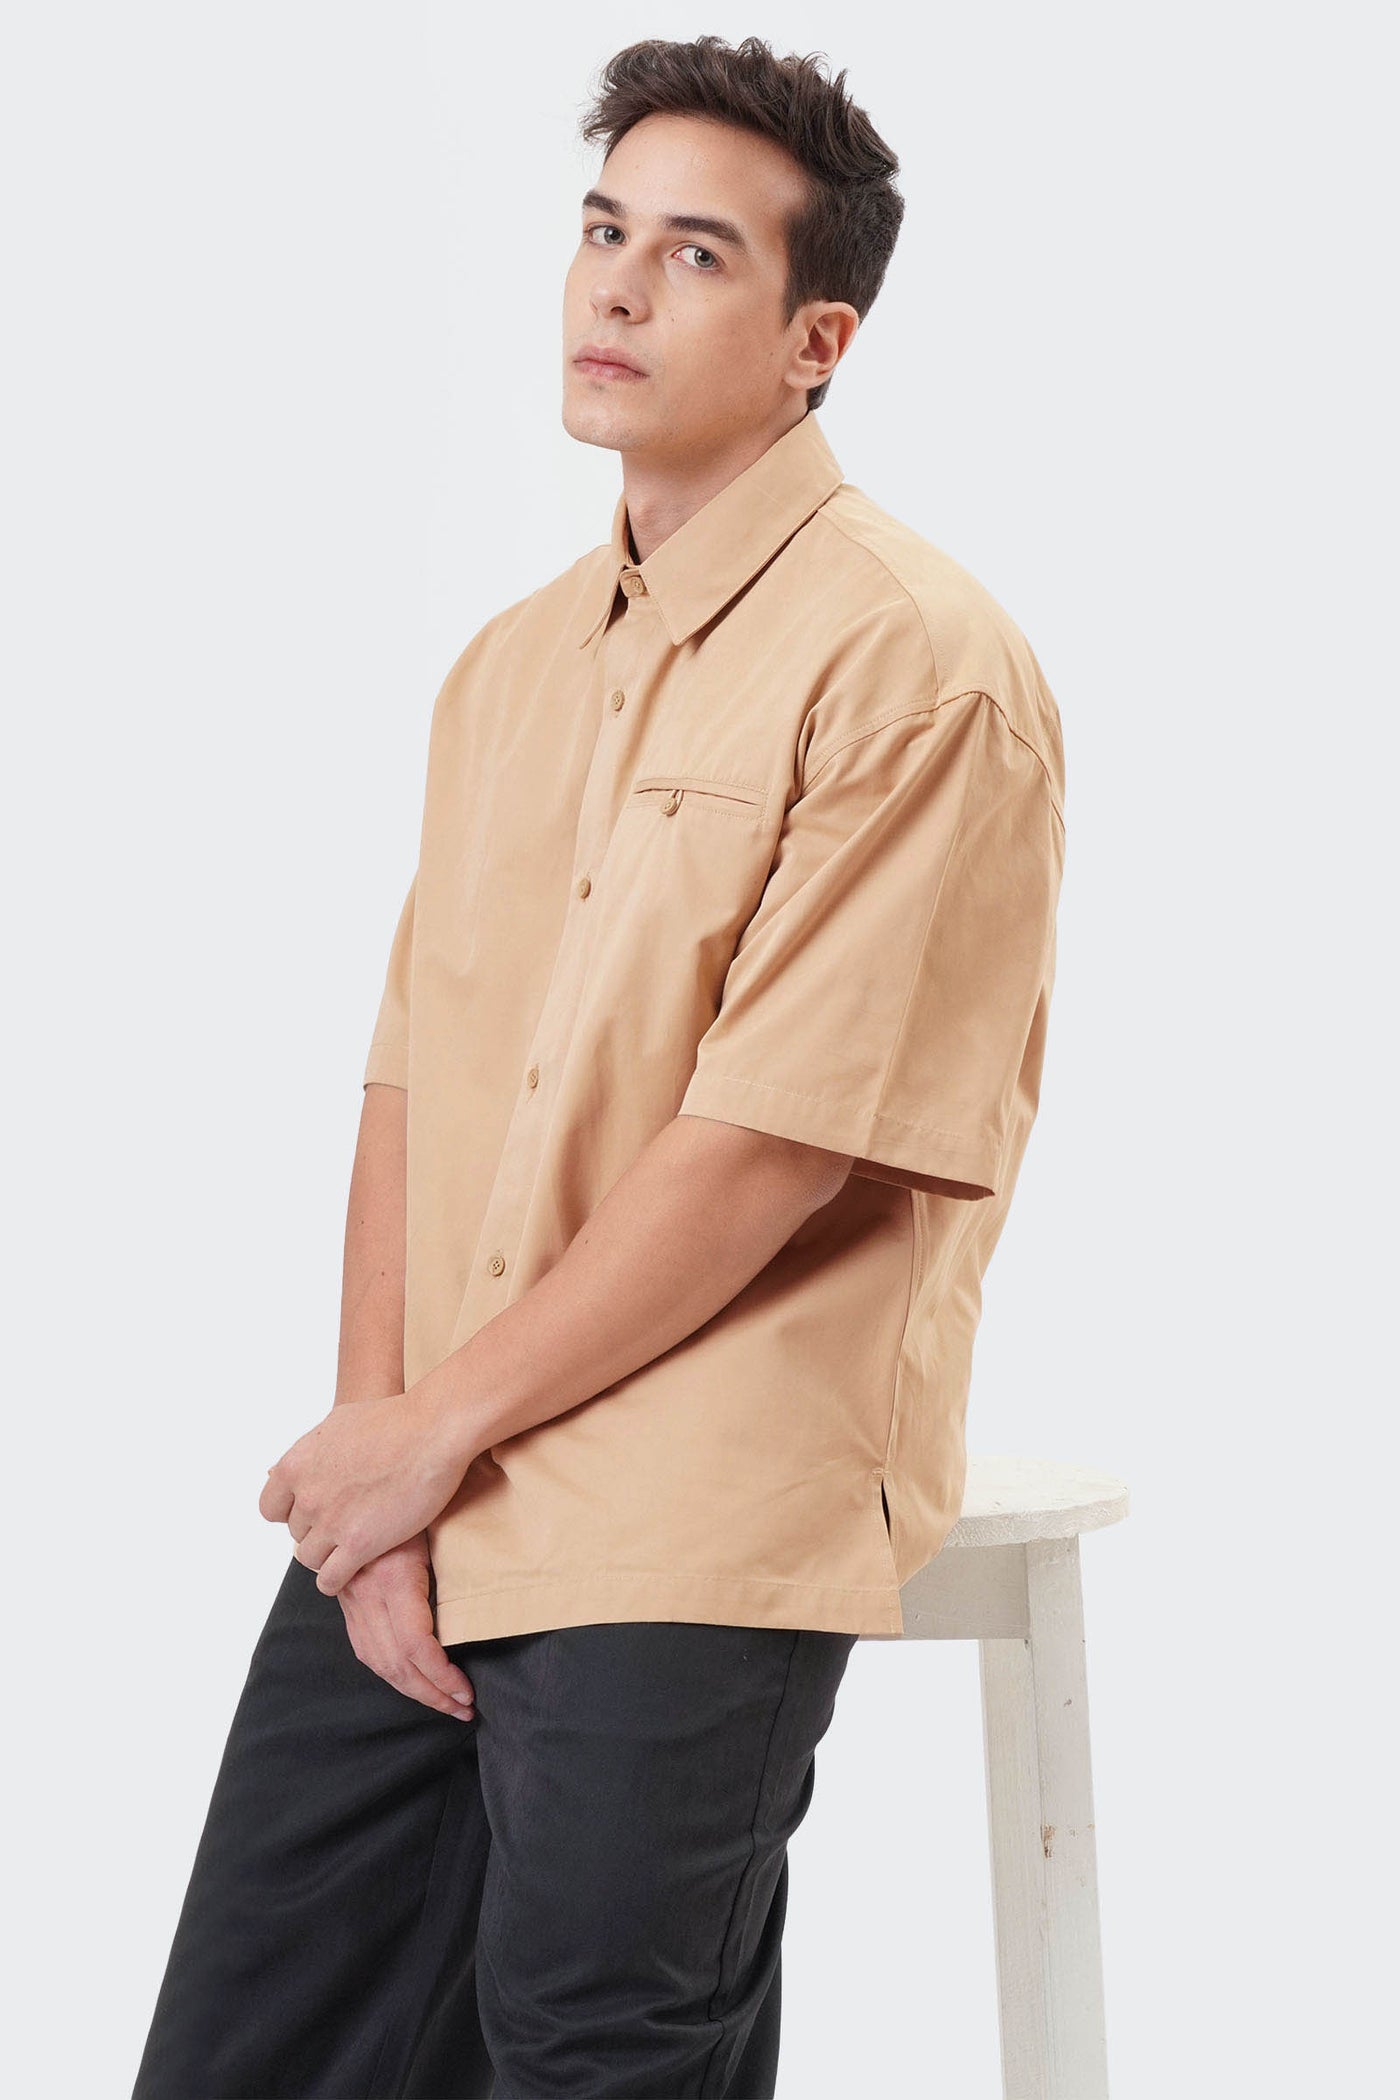 Men's Short Sleeve Shirt